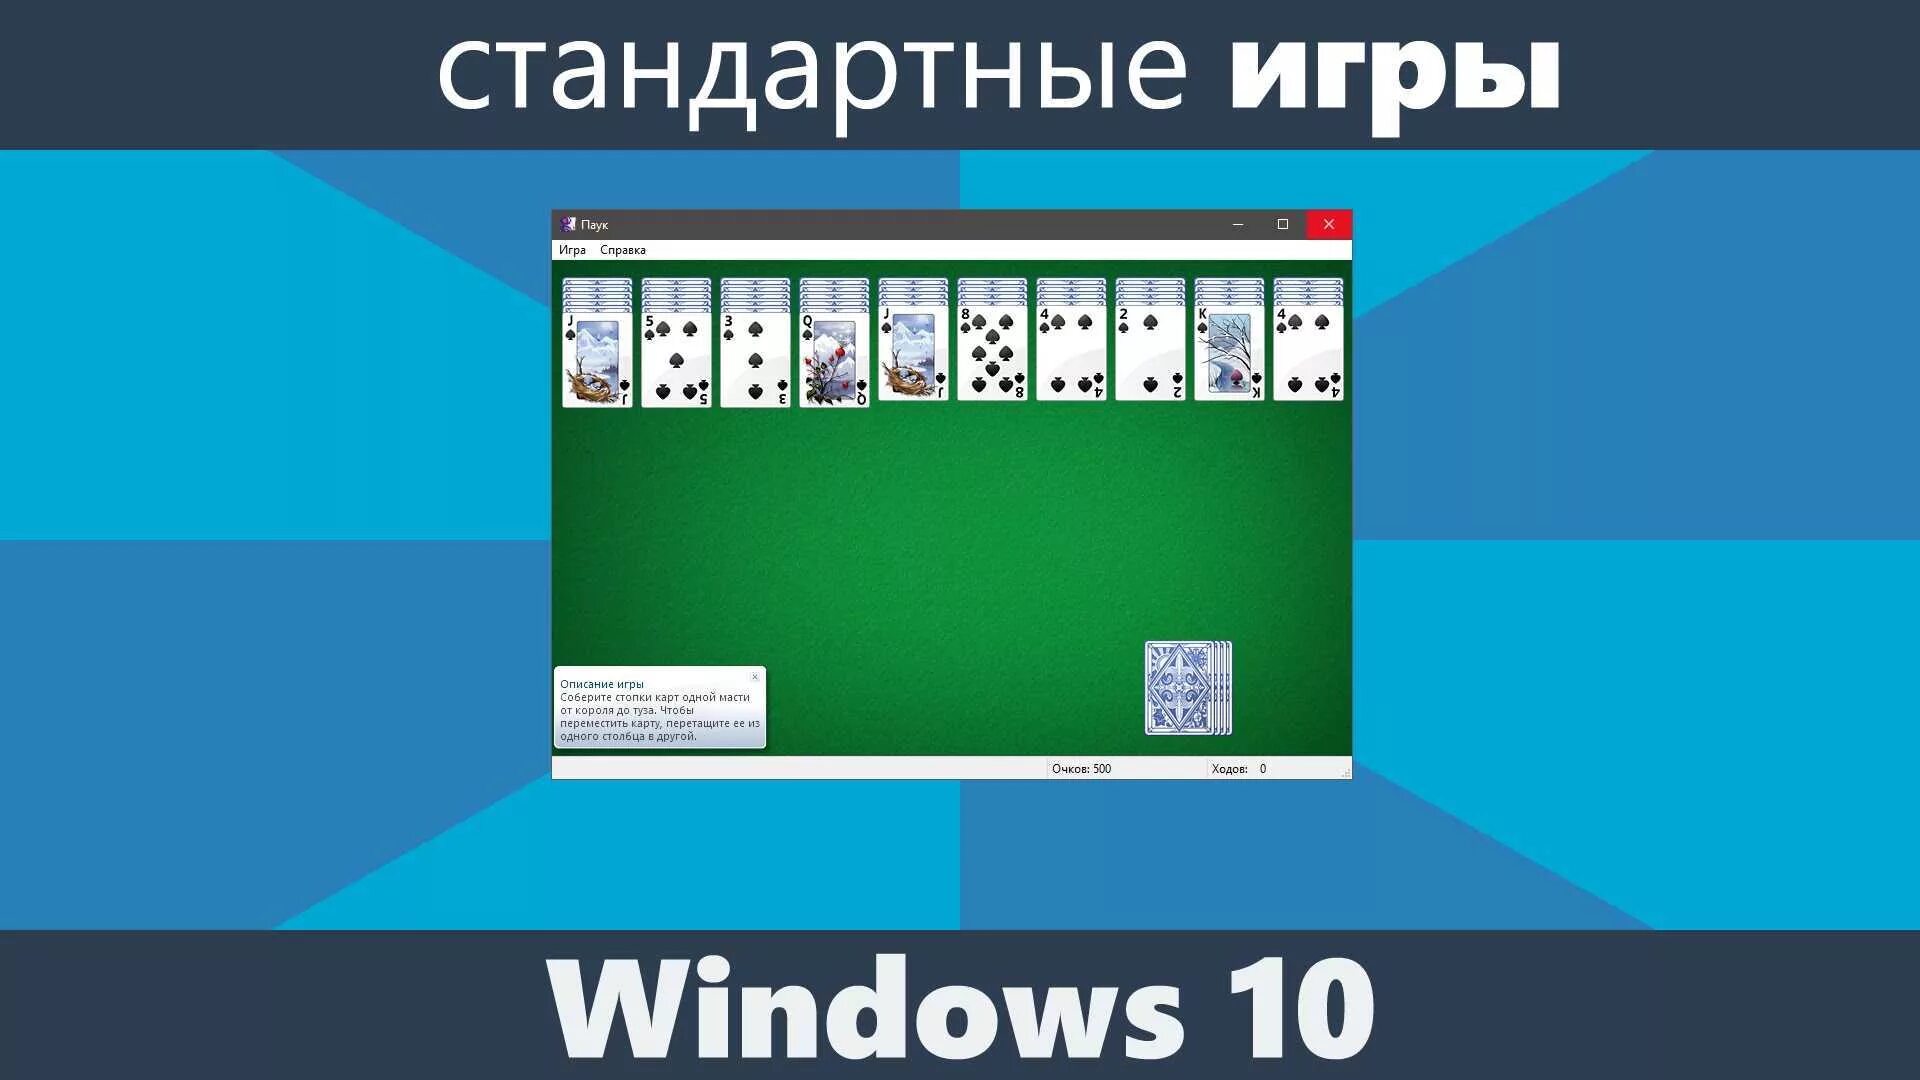 Игра косынка виндовс 10. Стандартные игры Windows. Стандартные карточные игры для Windows. Стандарте игры виндовс. Стандартные игры виндовс 10.